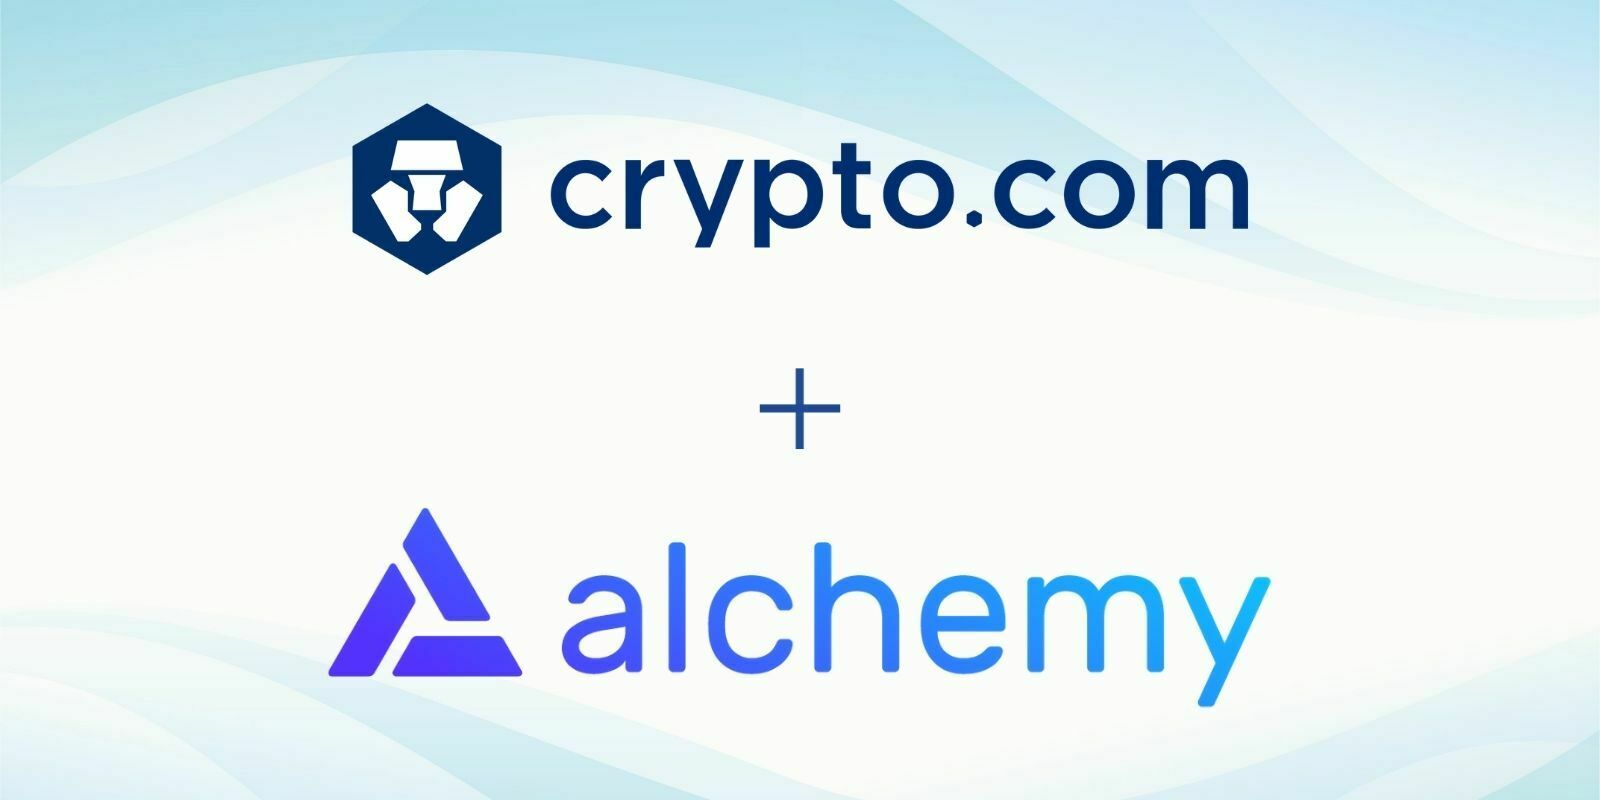 Crypto.com (CRO) s'associe à Alchemy pour faciliter le développement d'applications sur sa blockchain